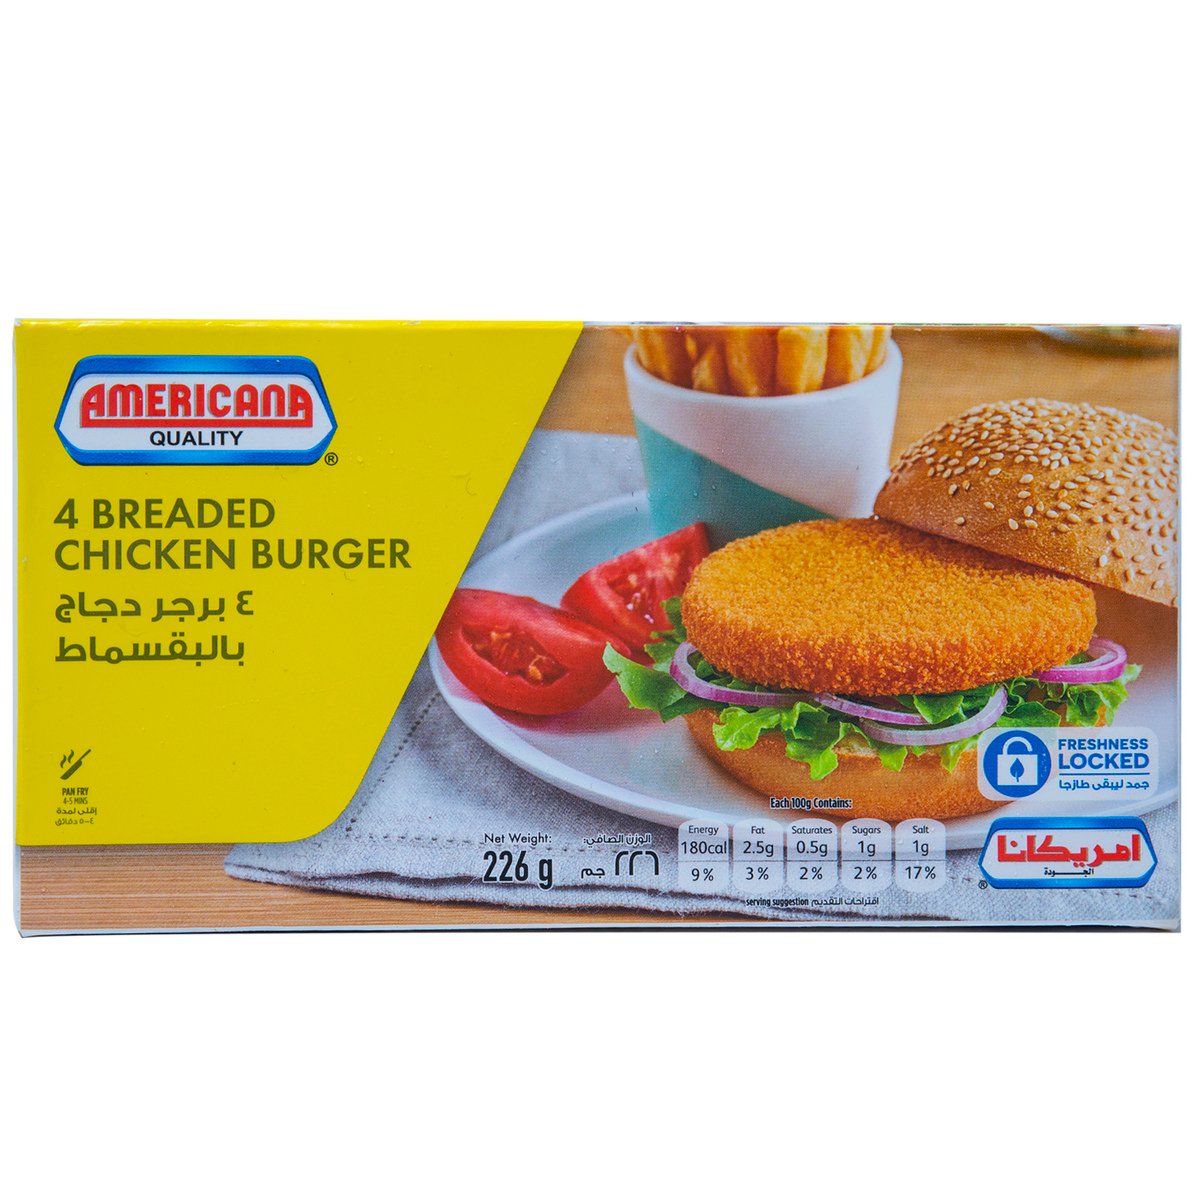 Americana 4 Breaded Chicken Burger 226g